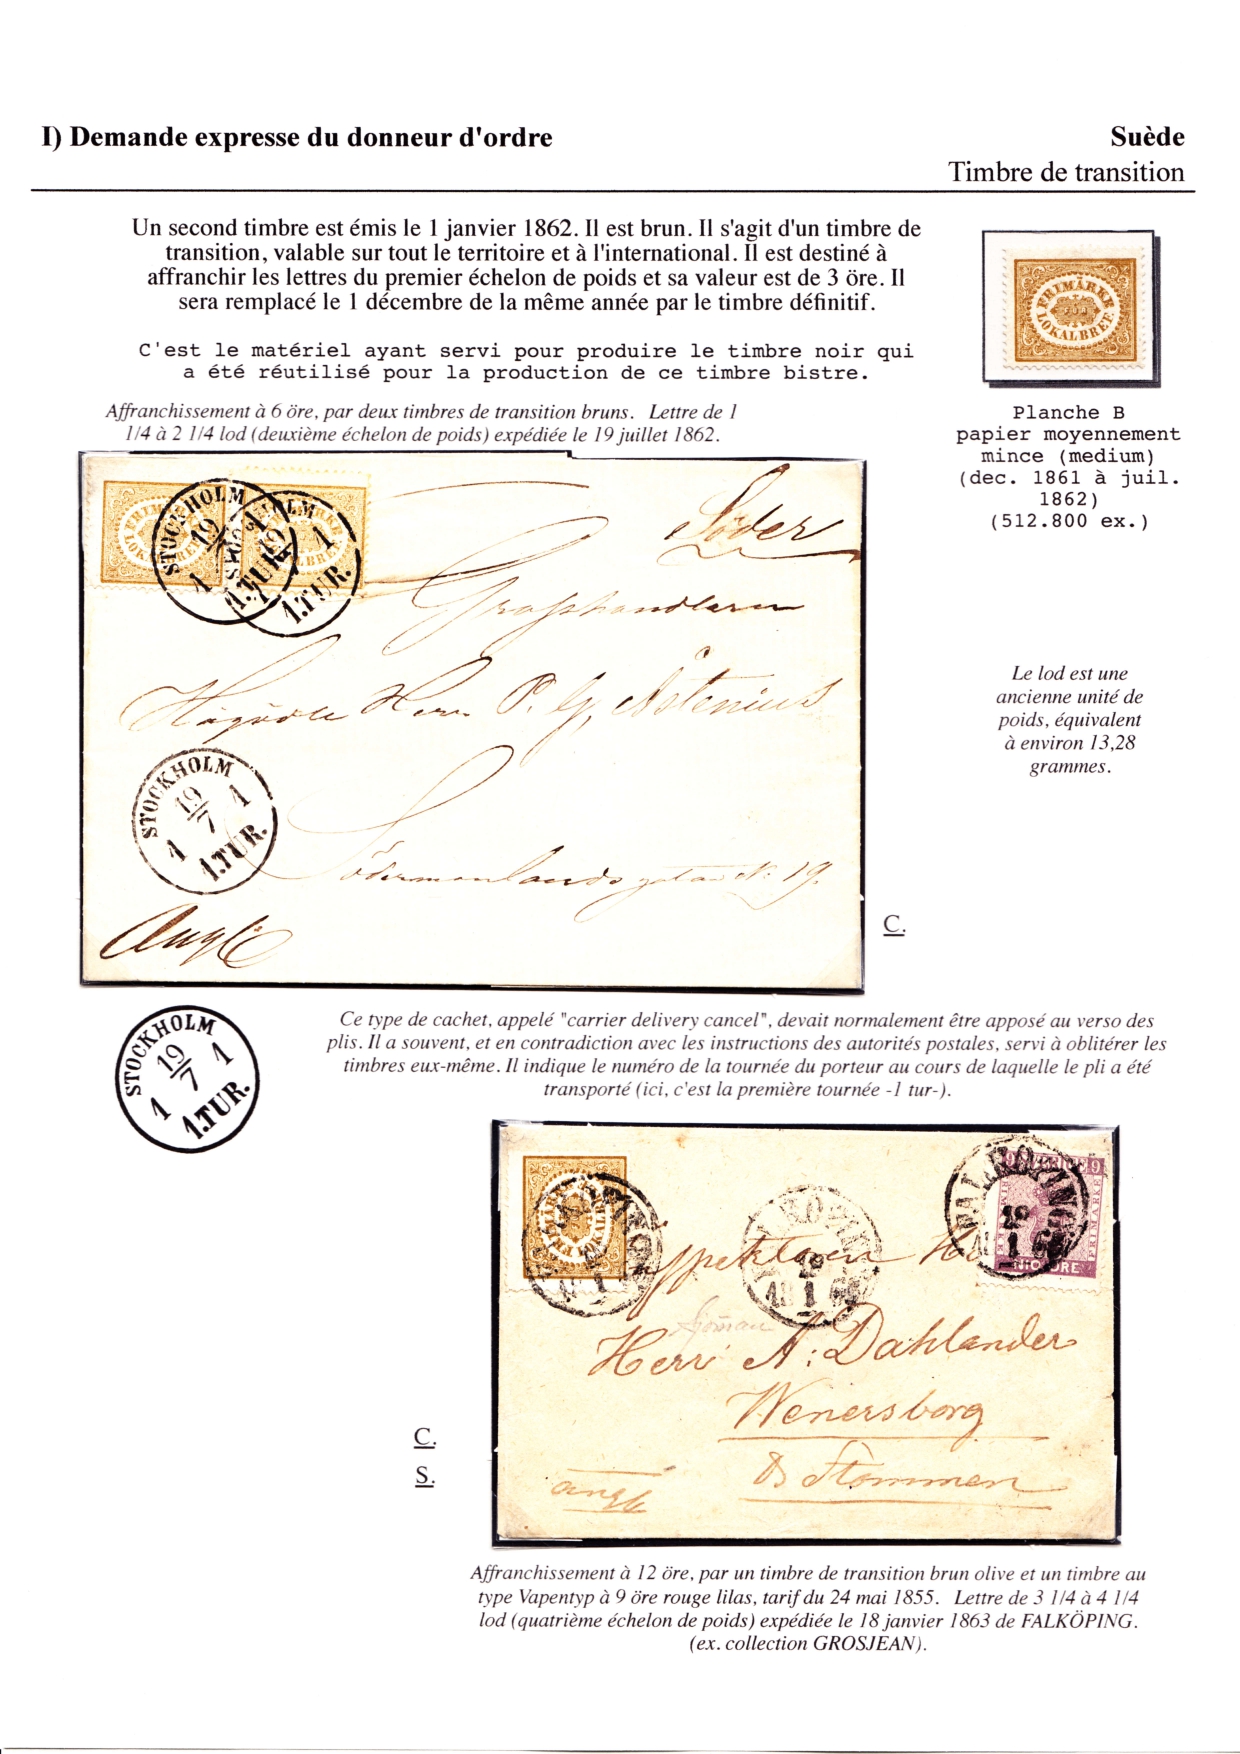 Les débuts des timbres sans valeur faciale apparente p. 13